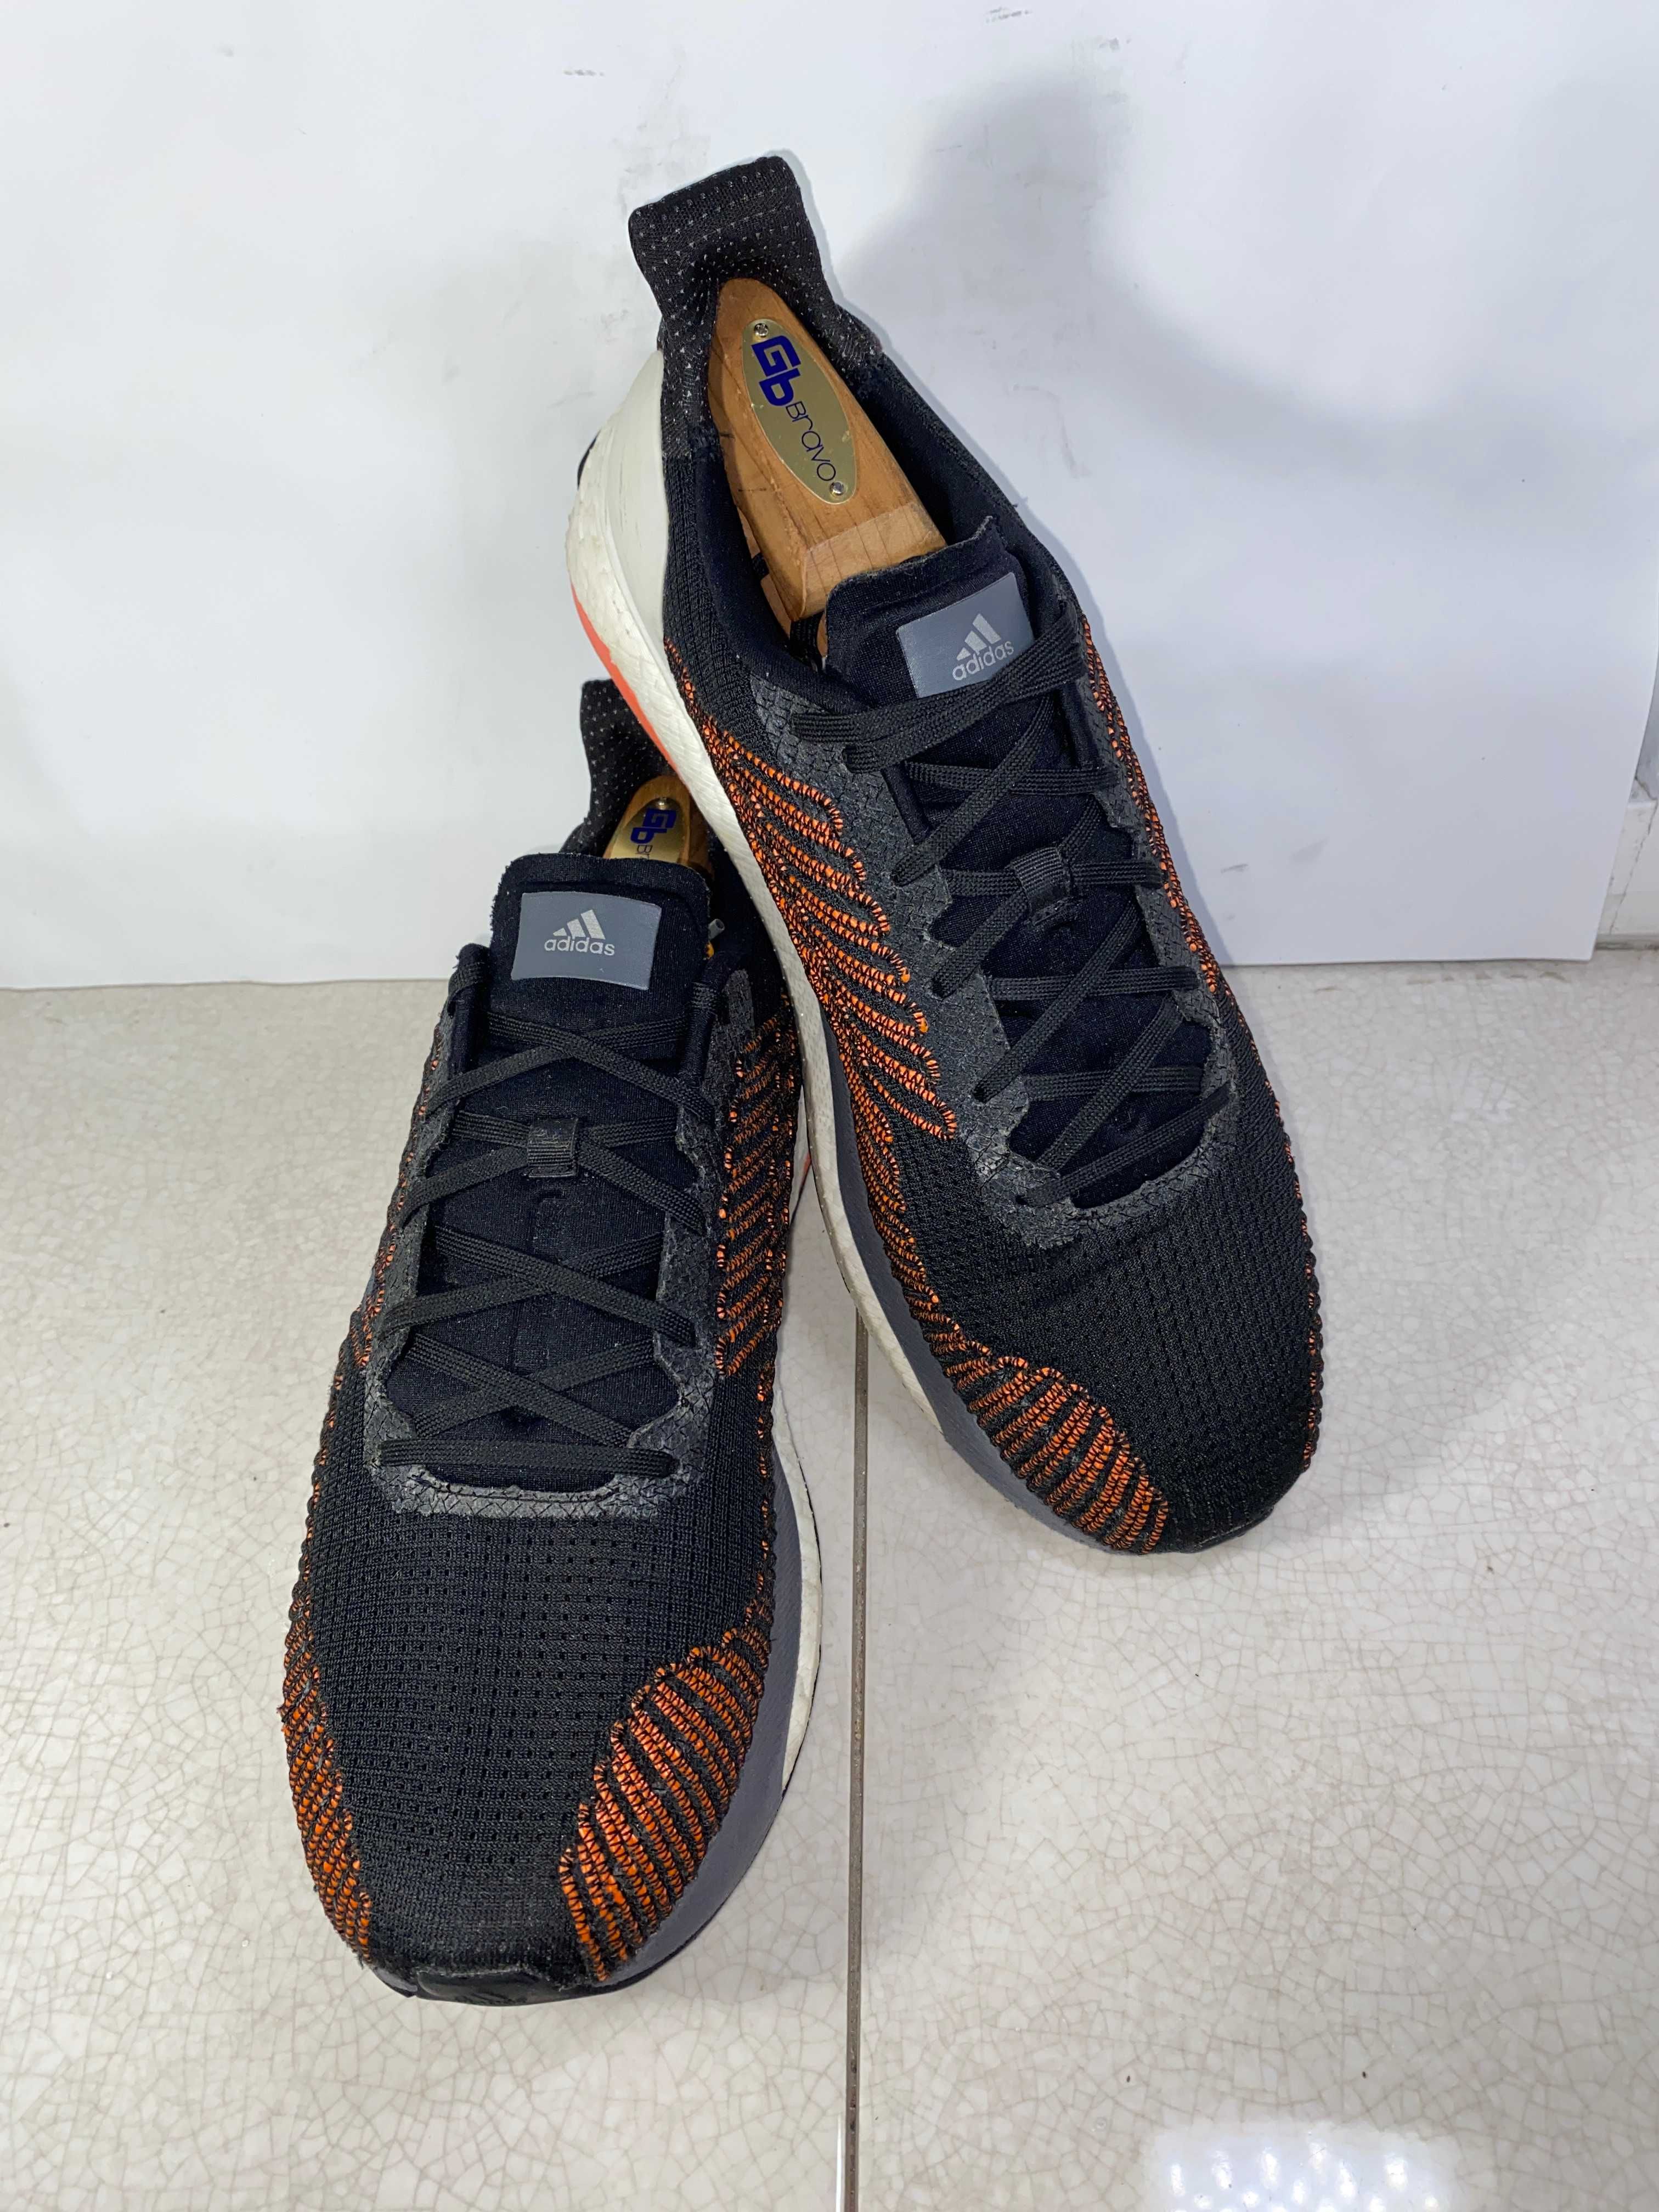 44 р Adidas Solar Boost St 19 мужские кроссовки 28 см оригинал